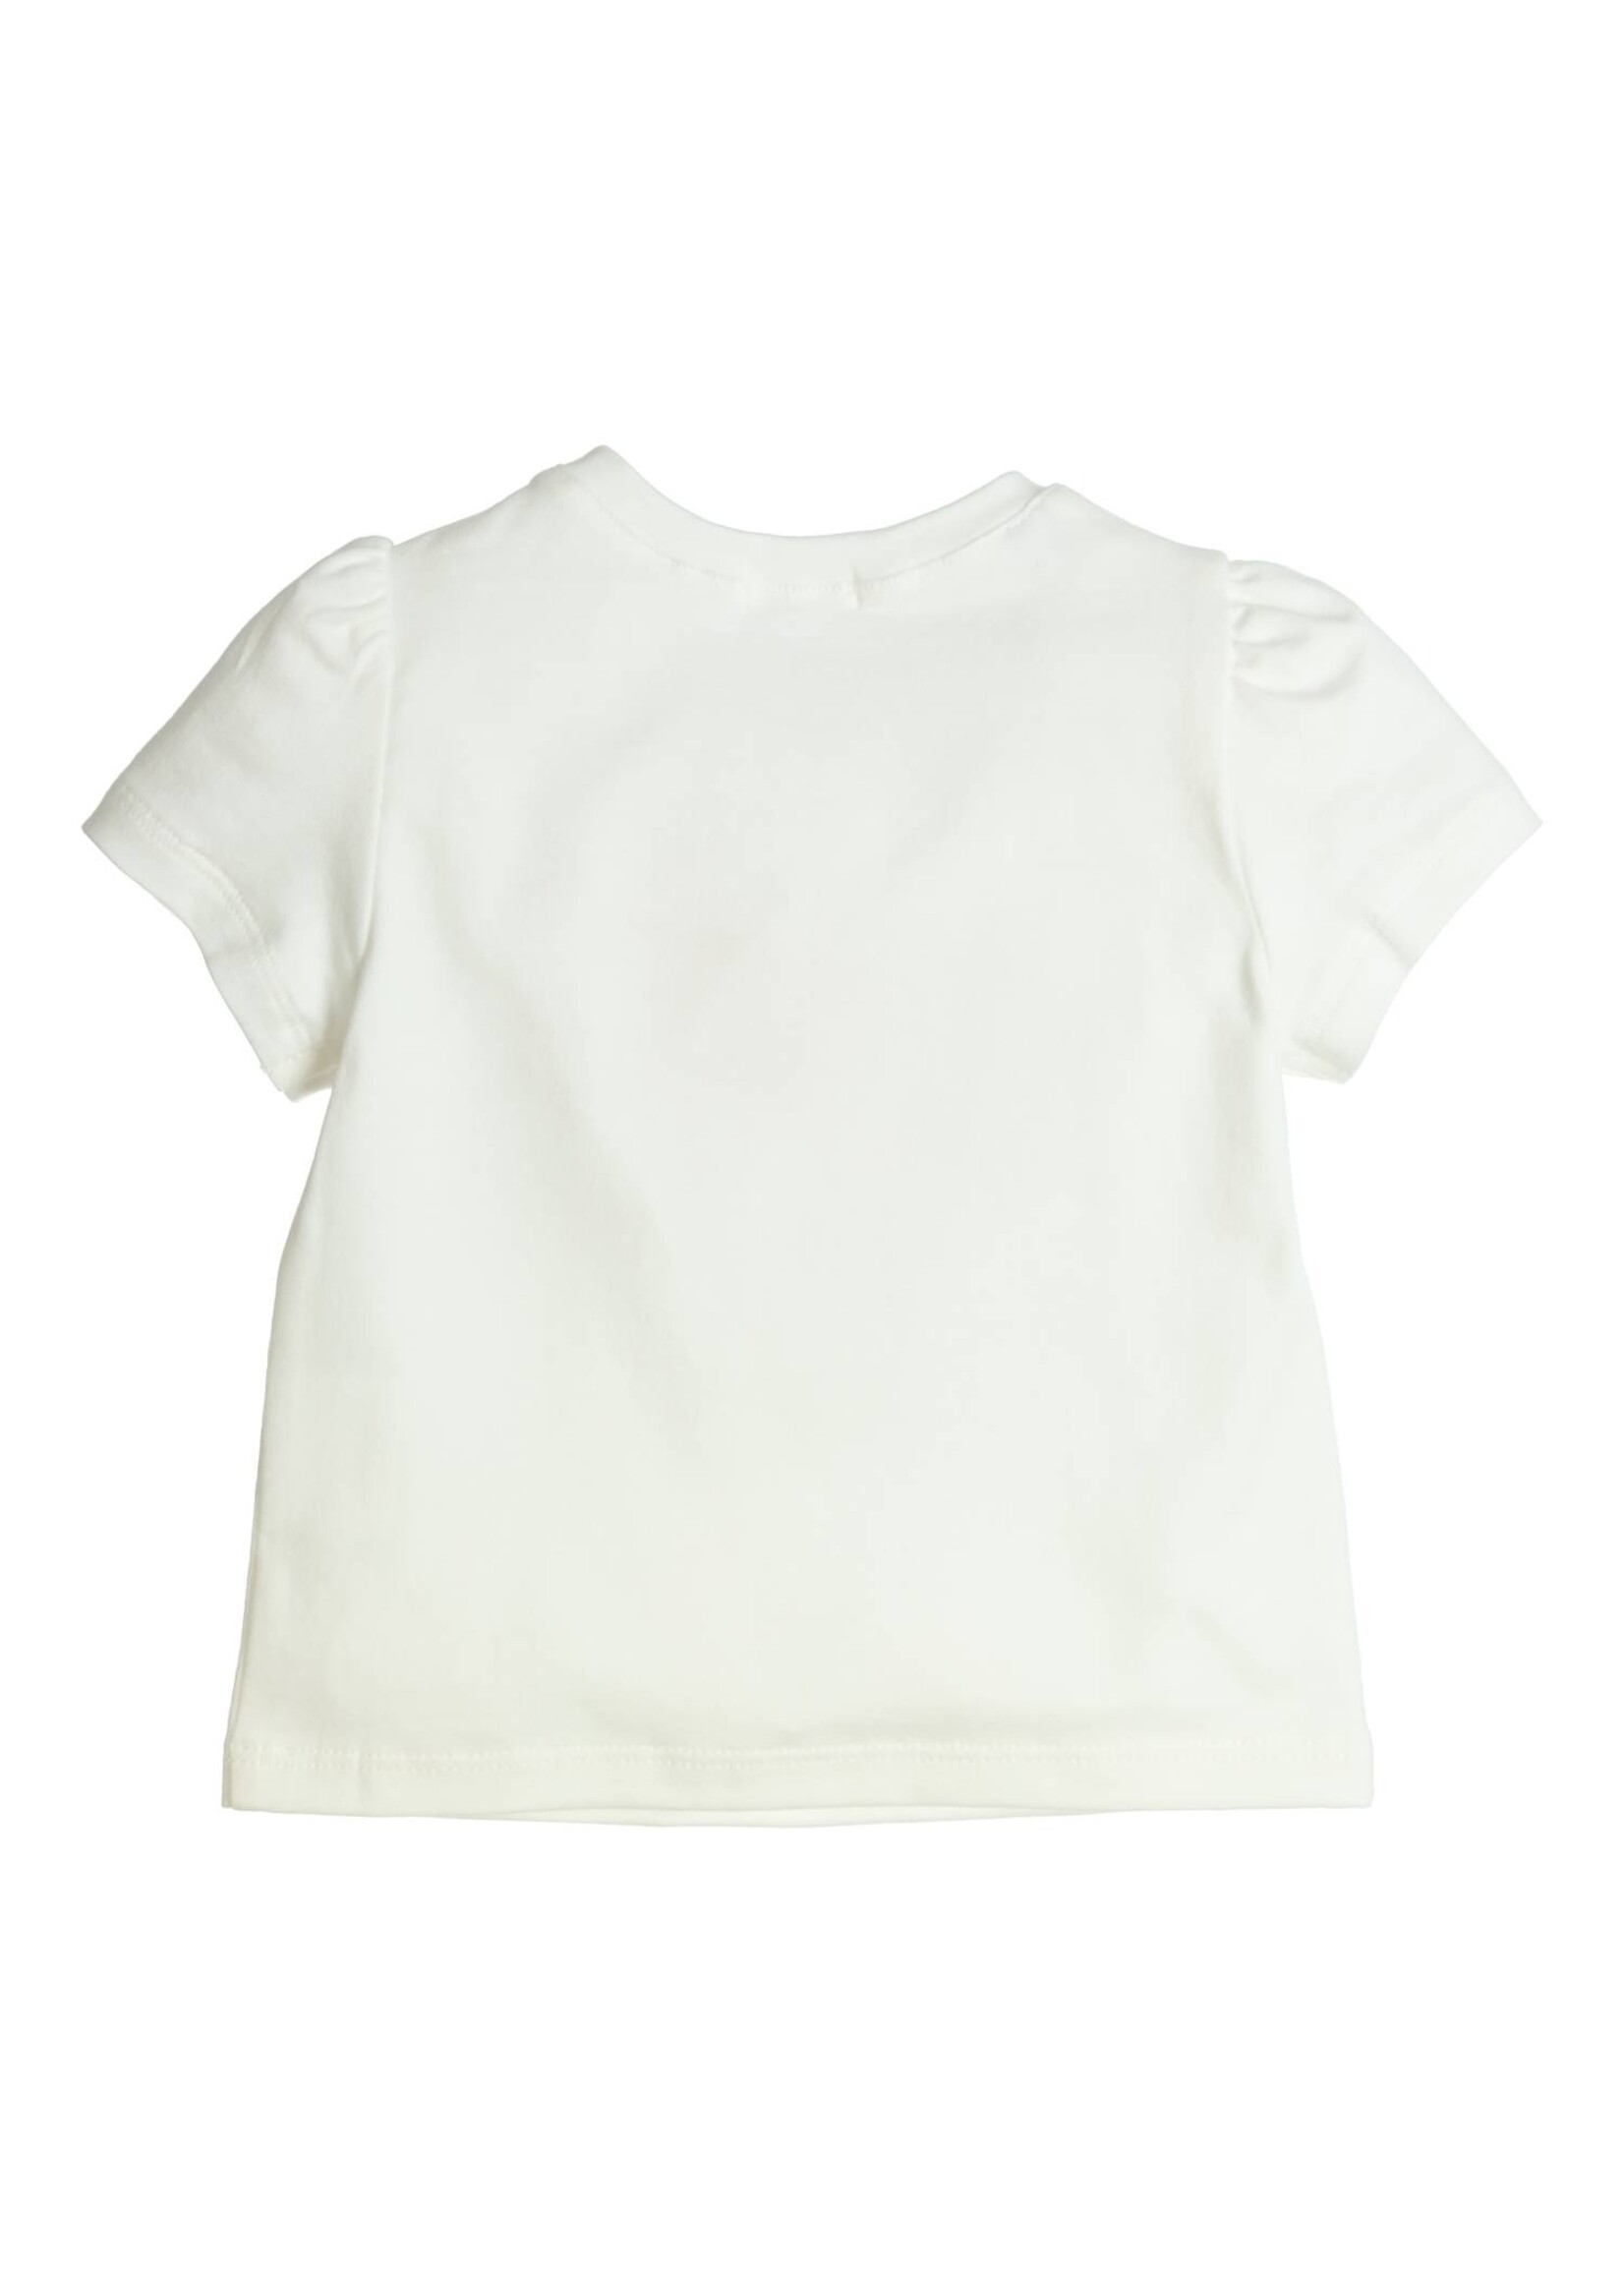 Gymp Girls T-shirt Aerobic Florida Orange 353-4238-10 Off White